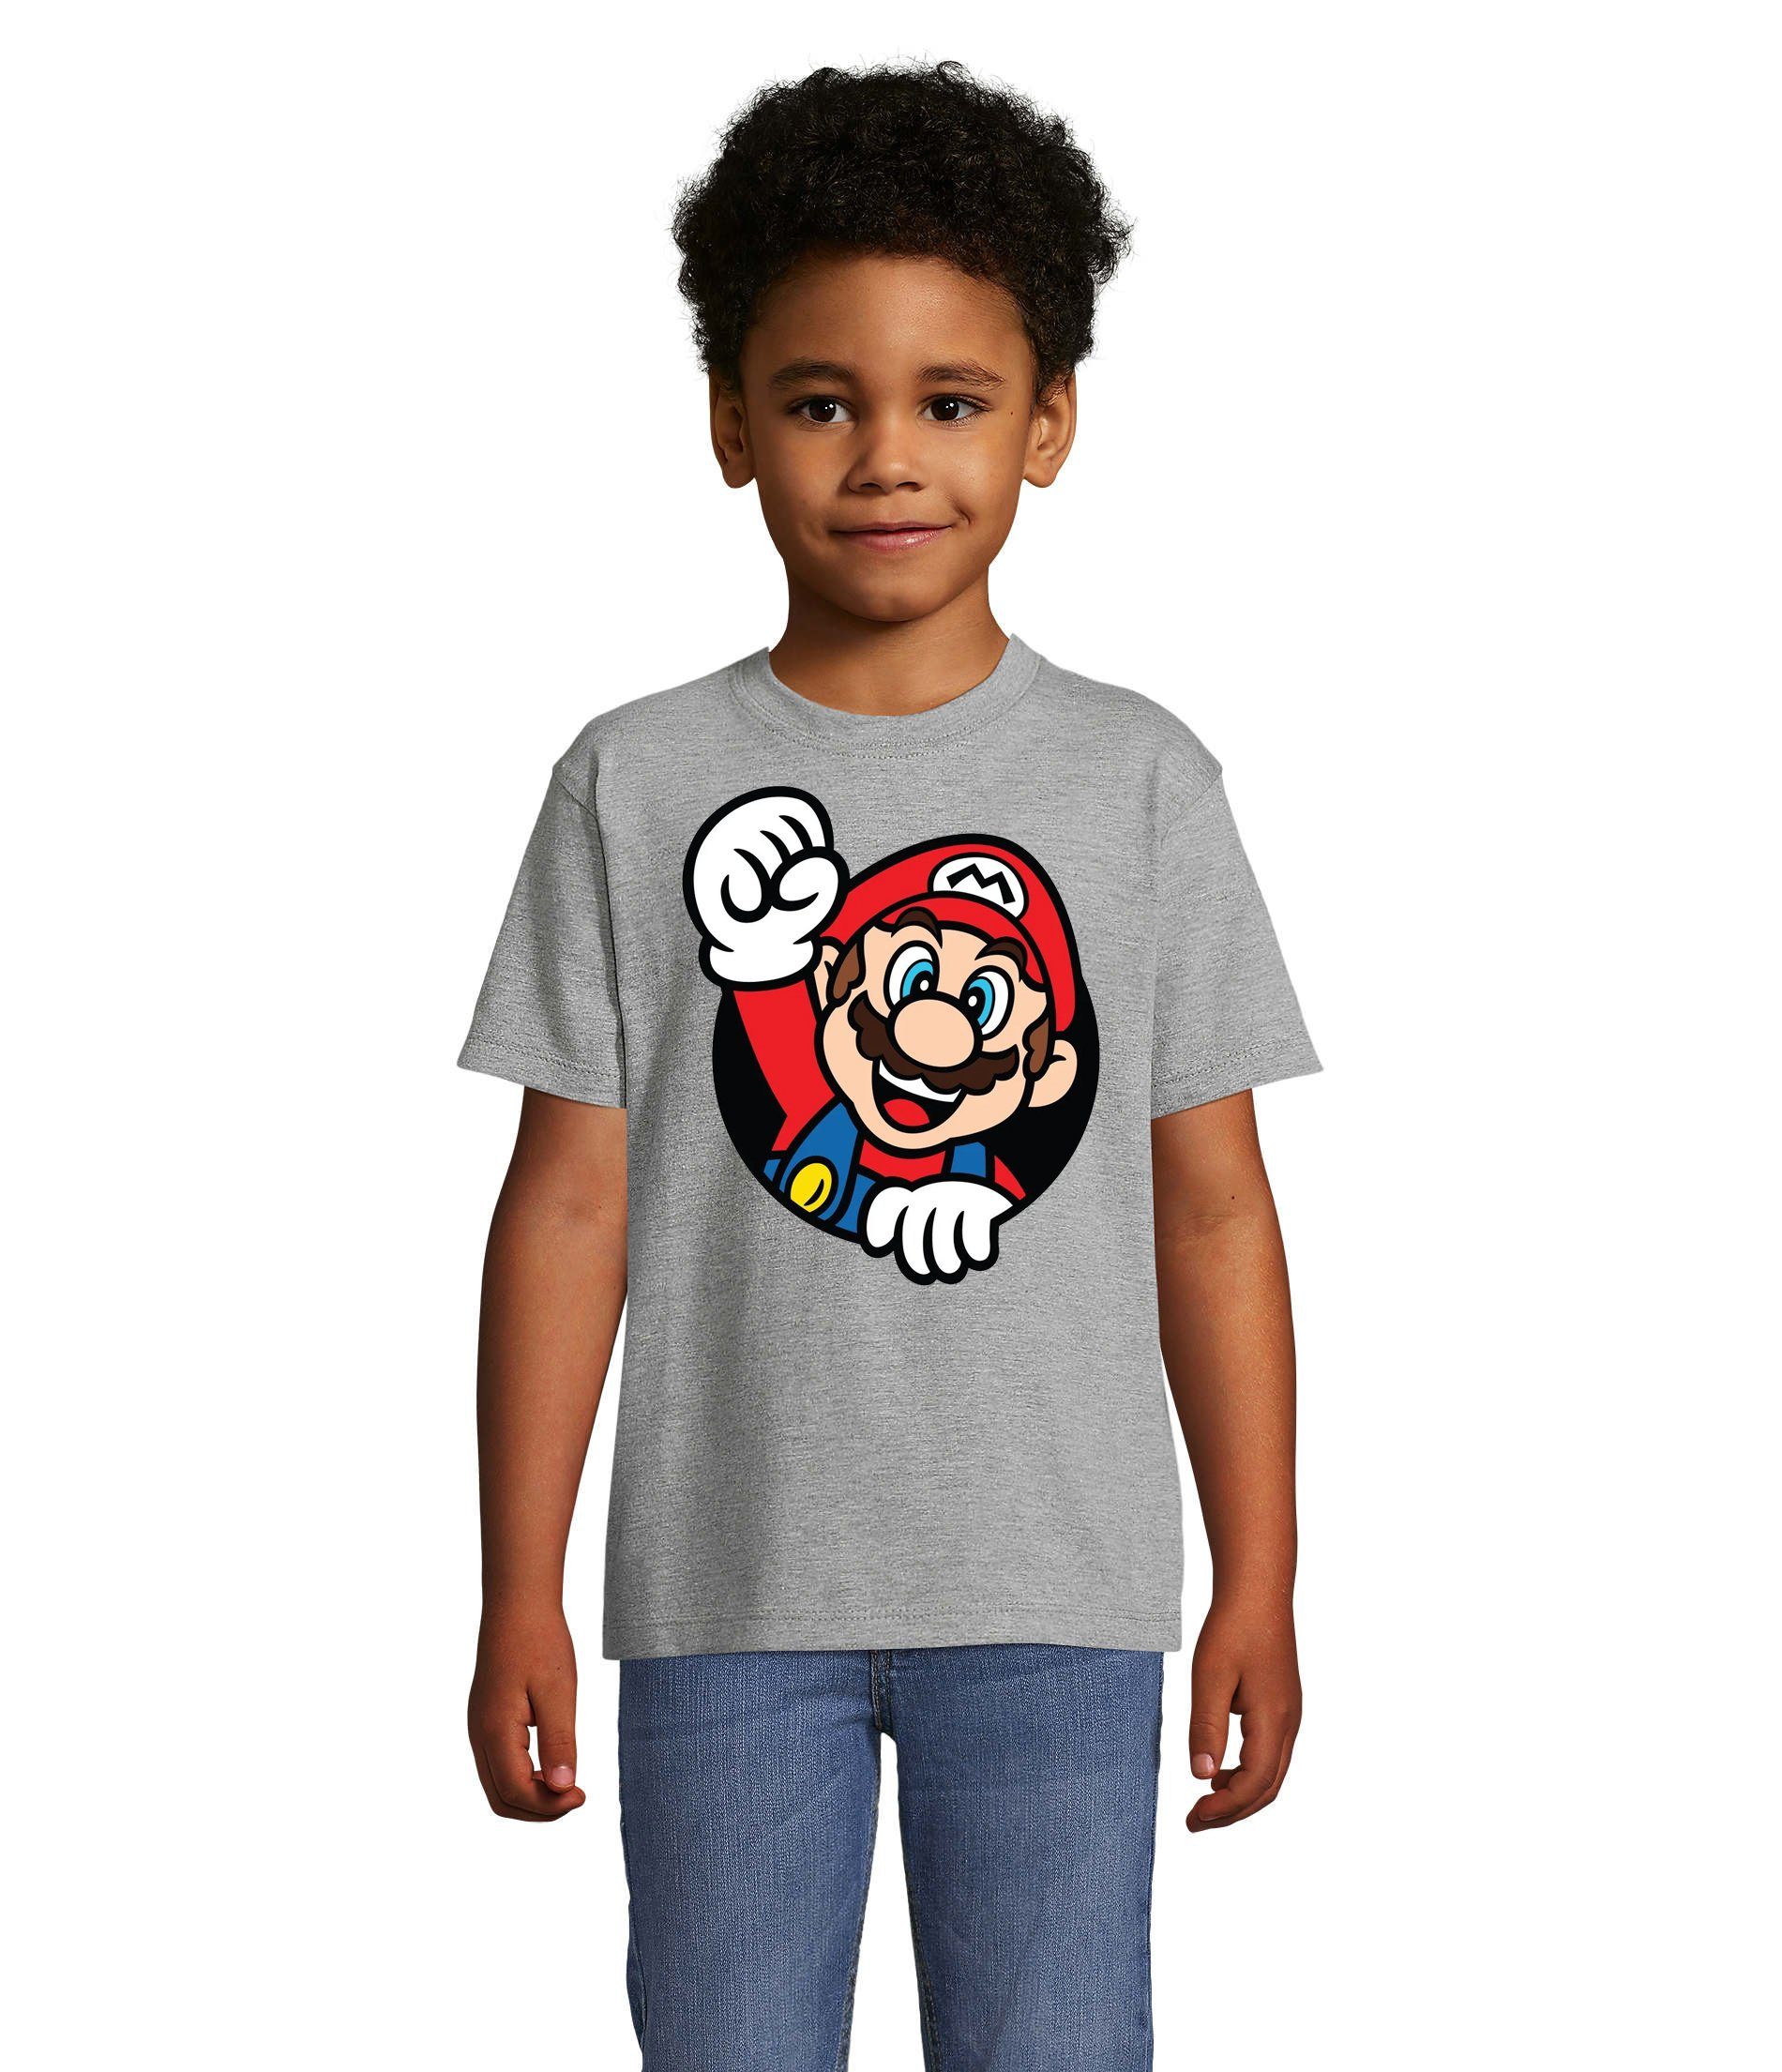 Blondie & Brownie T-Shirt Kinder Super Mario Faust Nerd Konsole Gaming Spiel Nintendo Konsole Grau